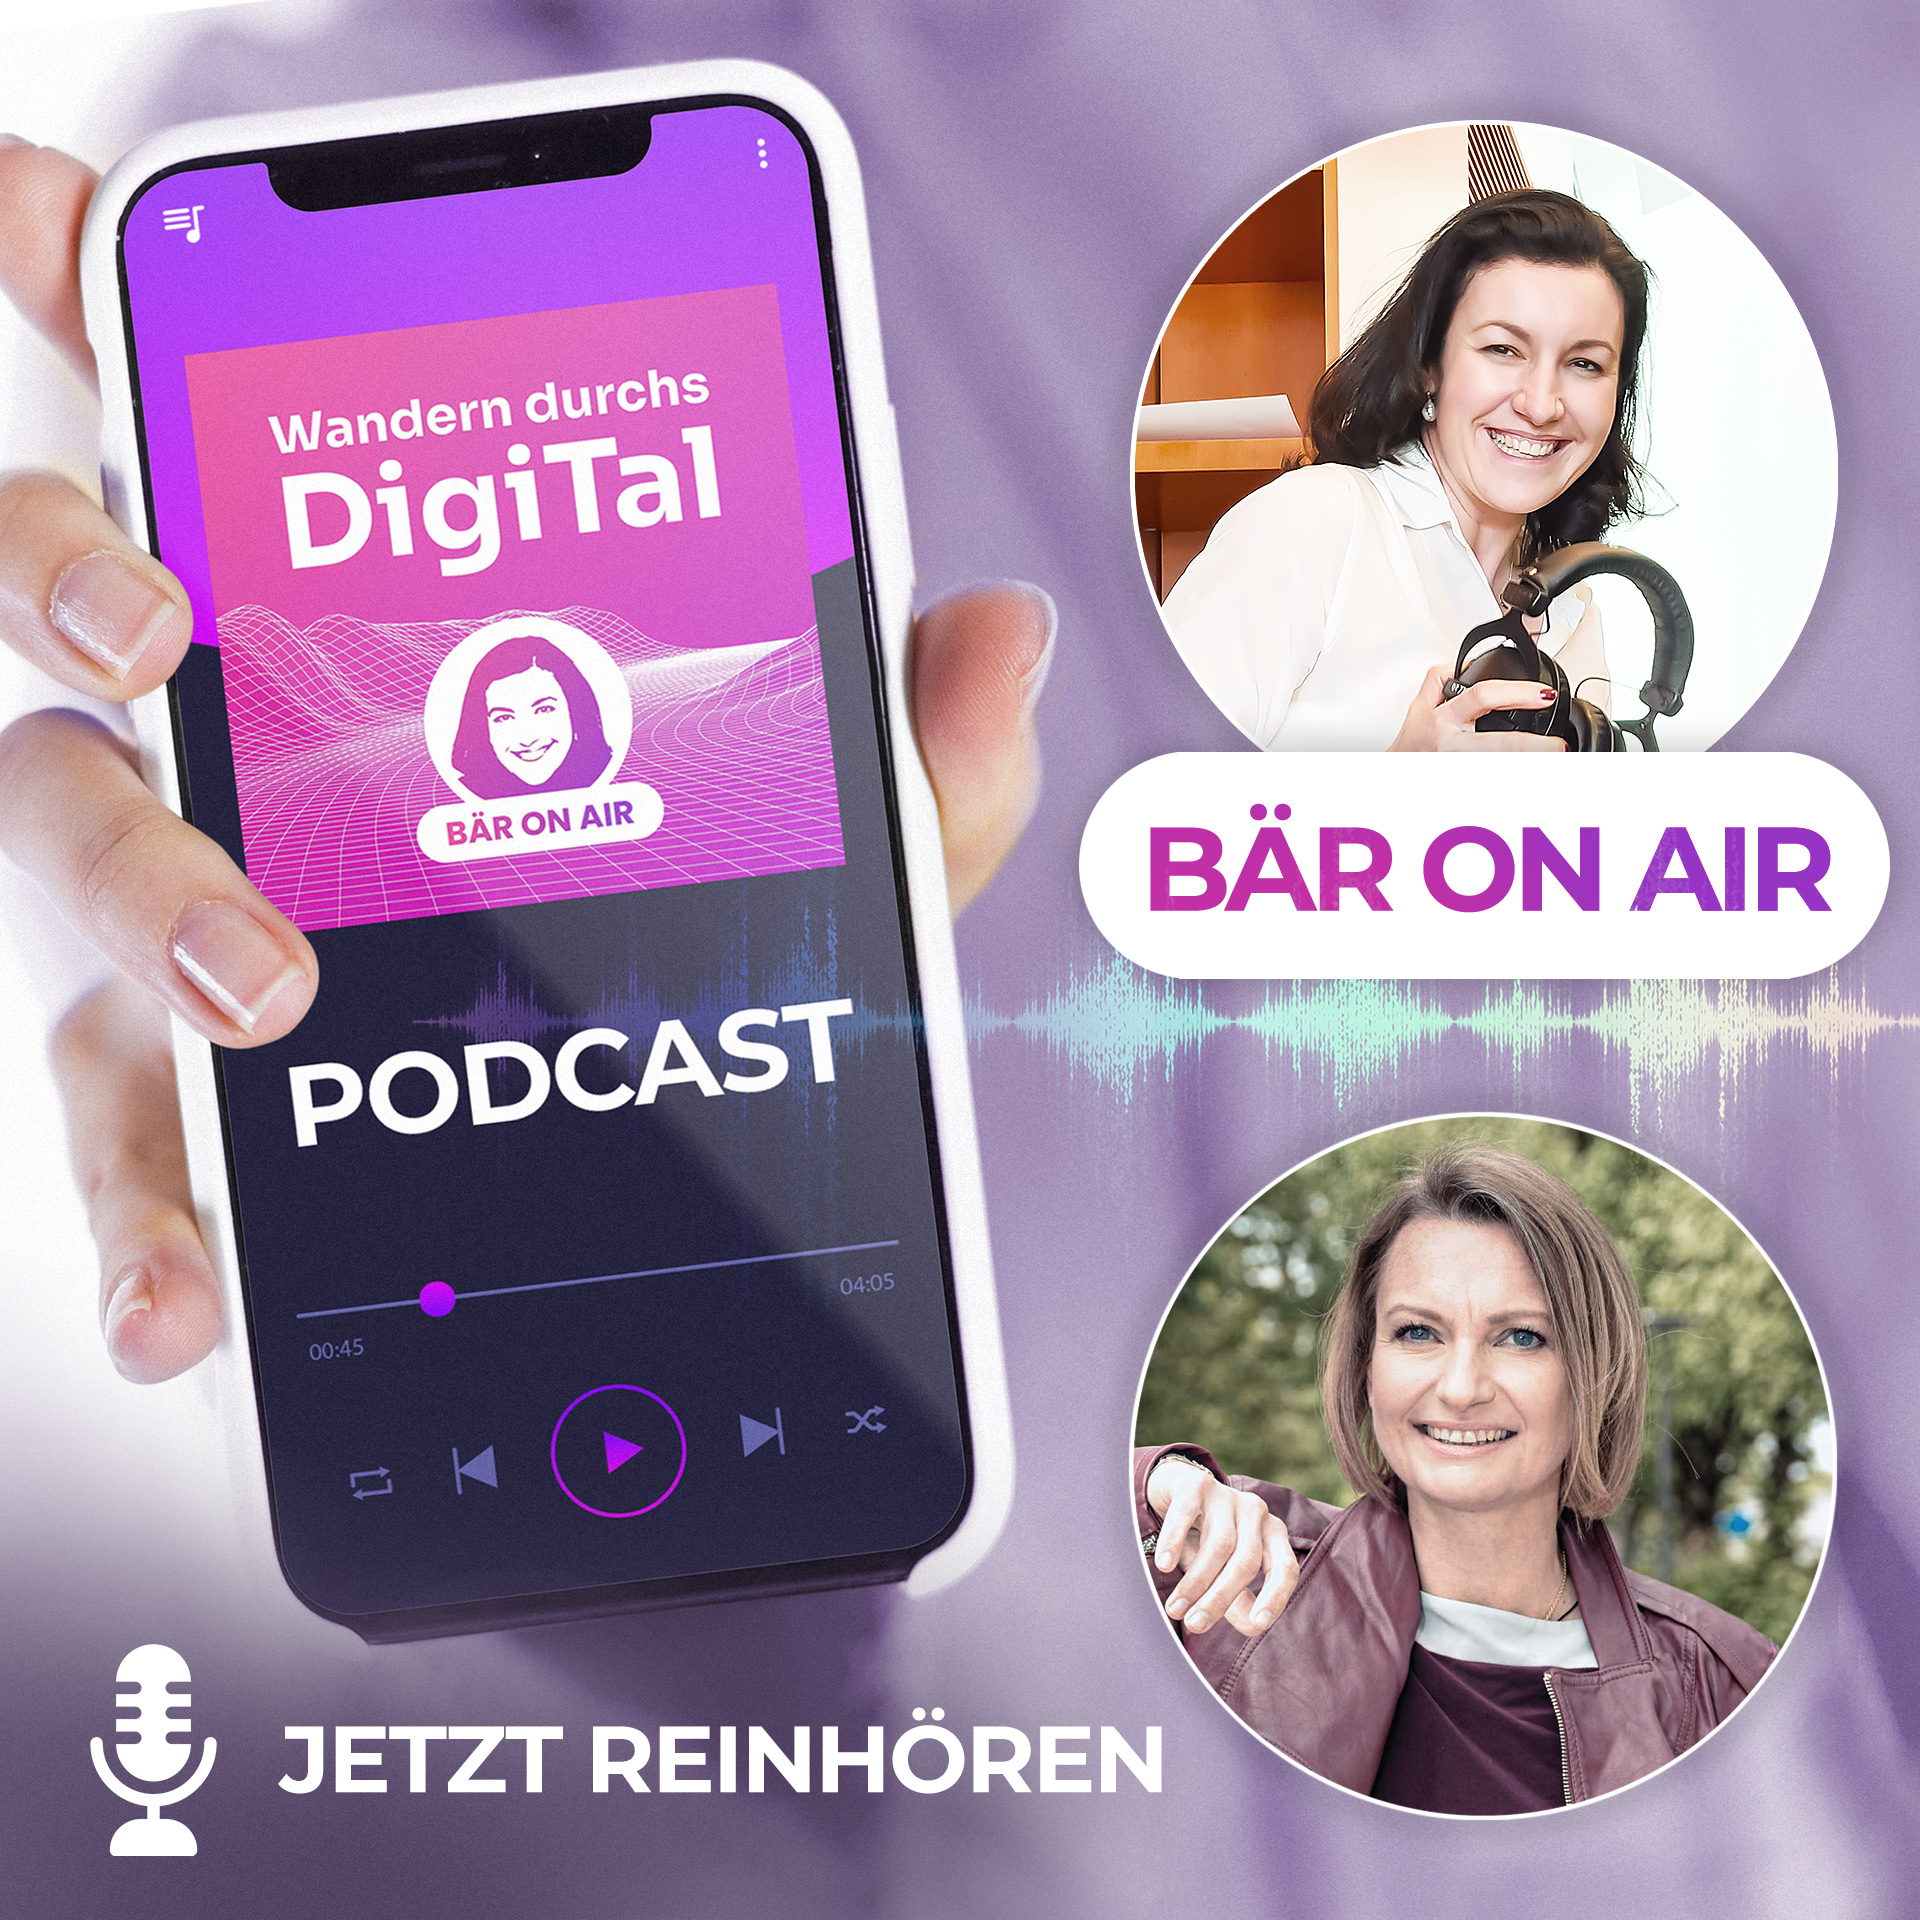 Coverbild zum Podcast von Staatsministerin Bär mit Katharina Schüler.